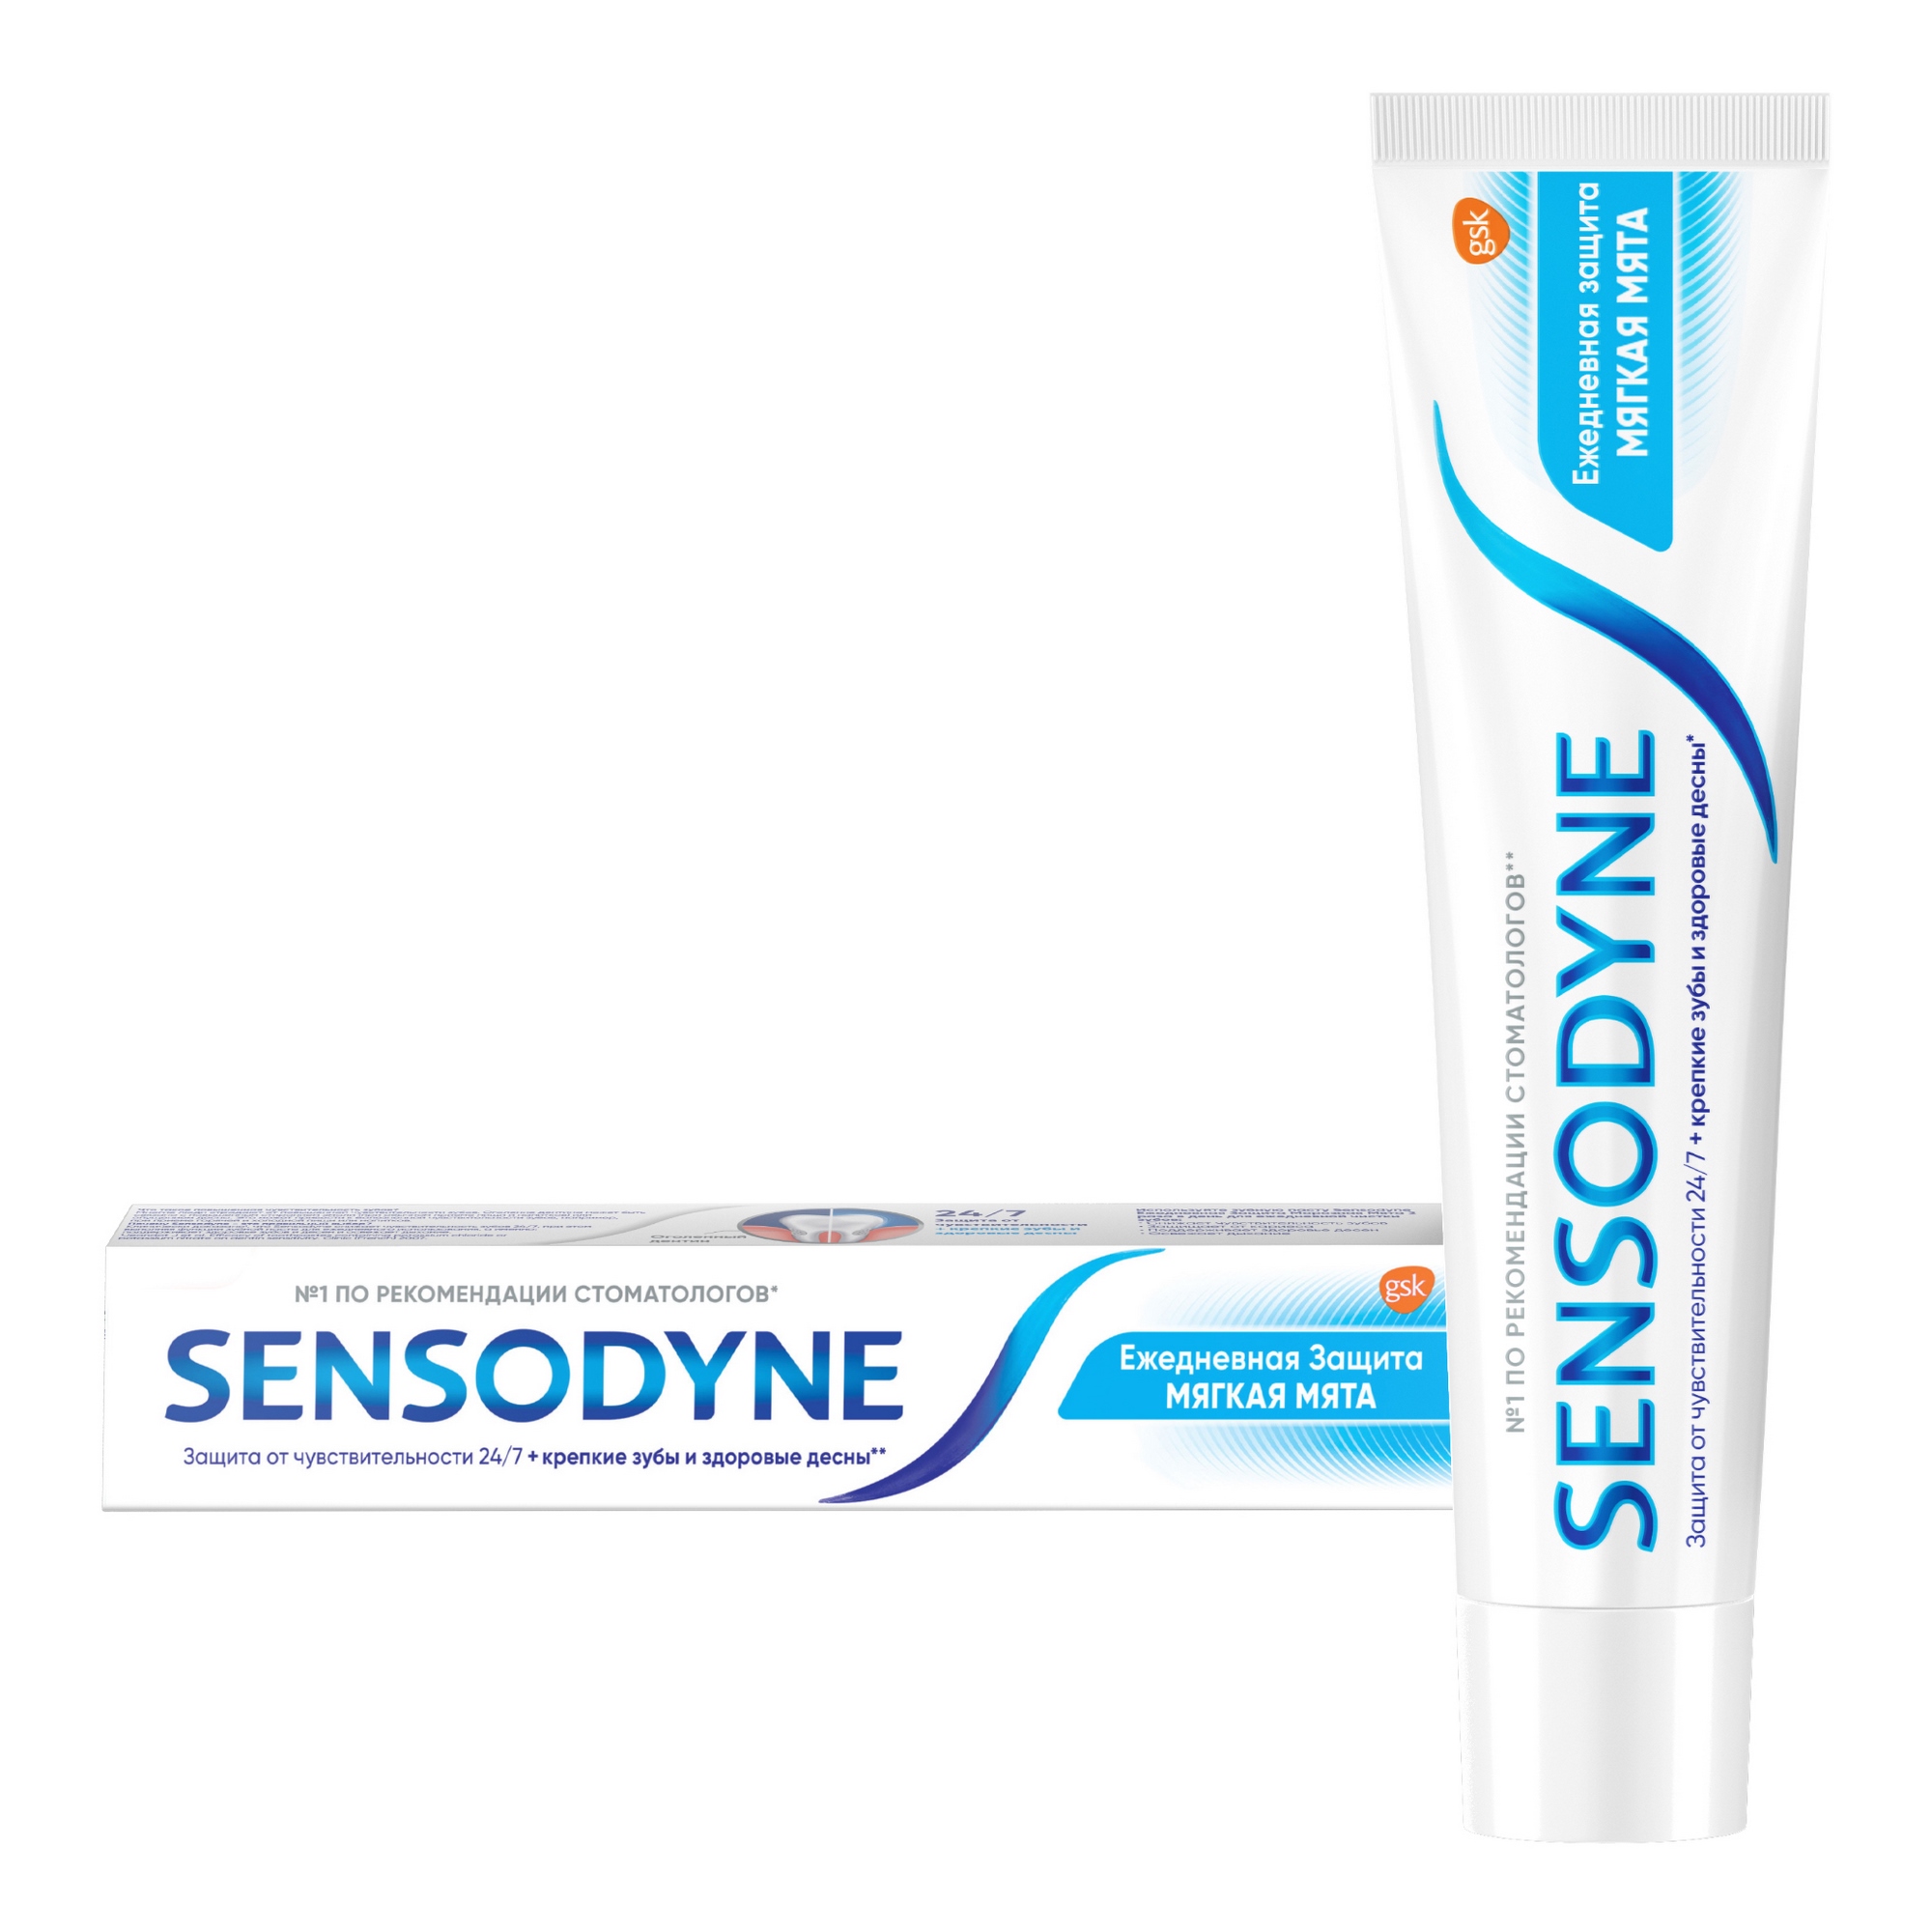 Зубная паста Sensodyne Ежедневная защита Мягкаямята 65 г зубная паста sensodyne мгновенный эффект 75мл